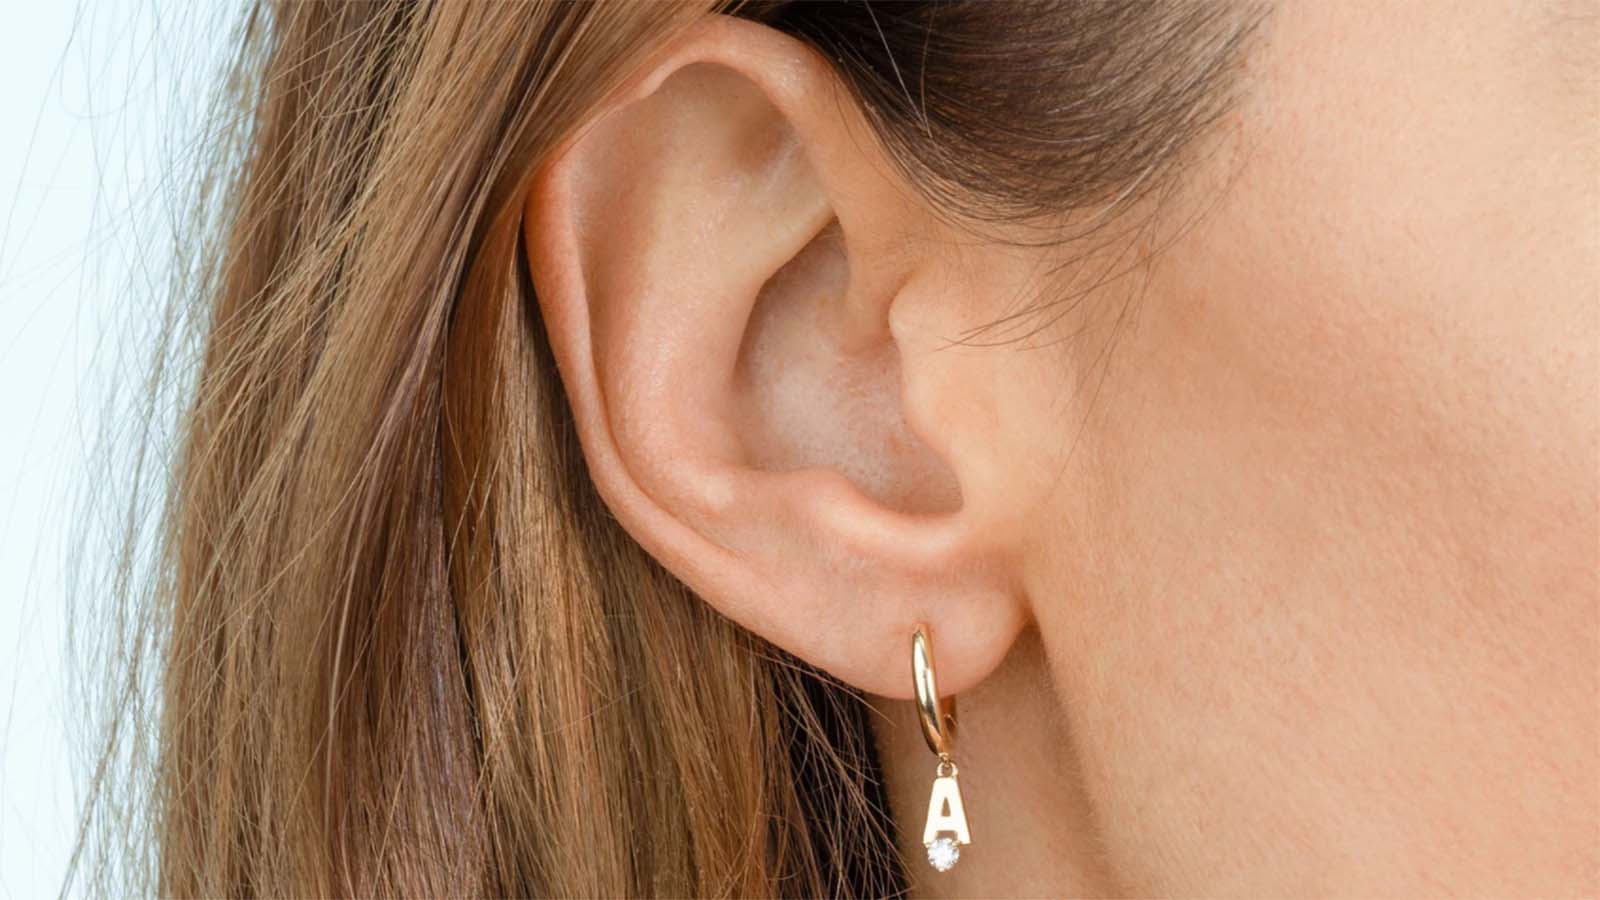 15+ Best Luxury Hoop Earrings - Why Hoop Earrings Are the Sexiest